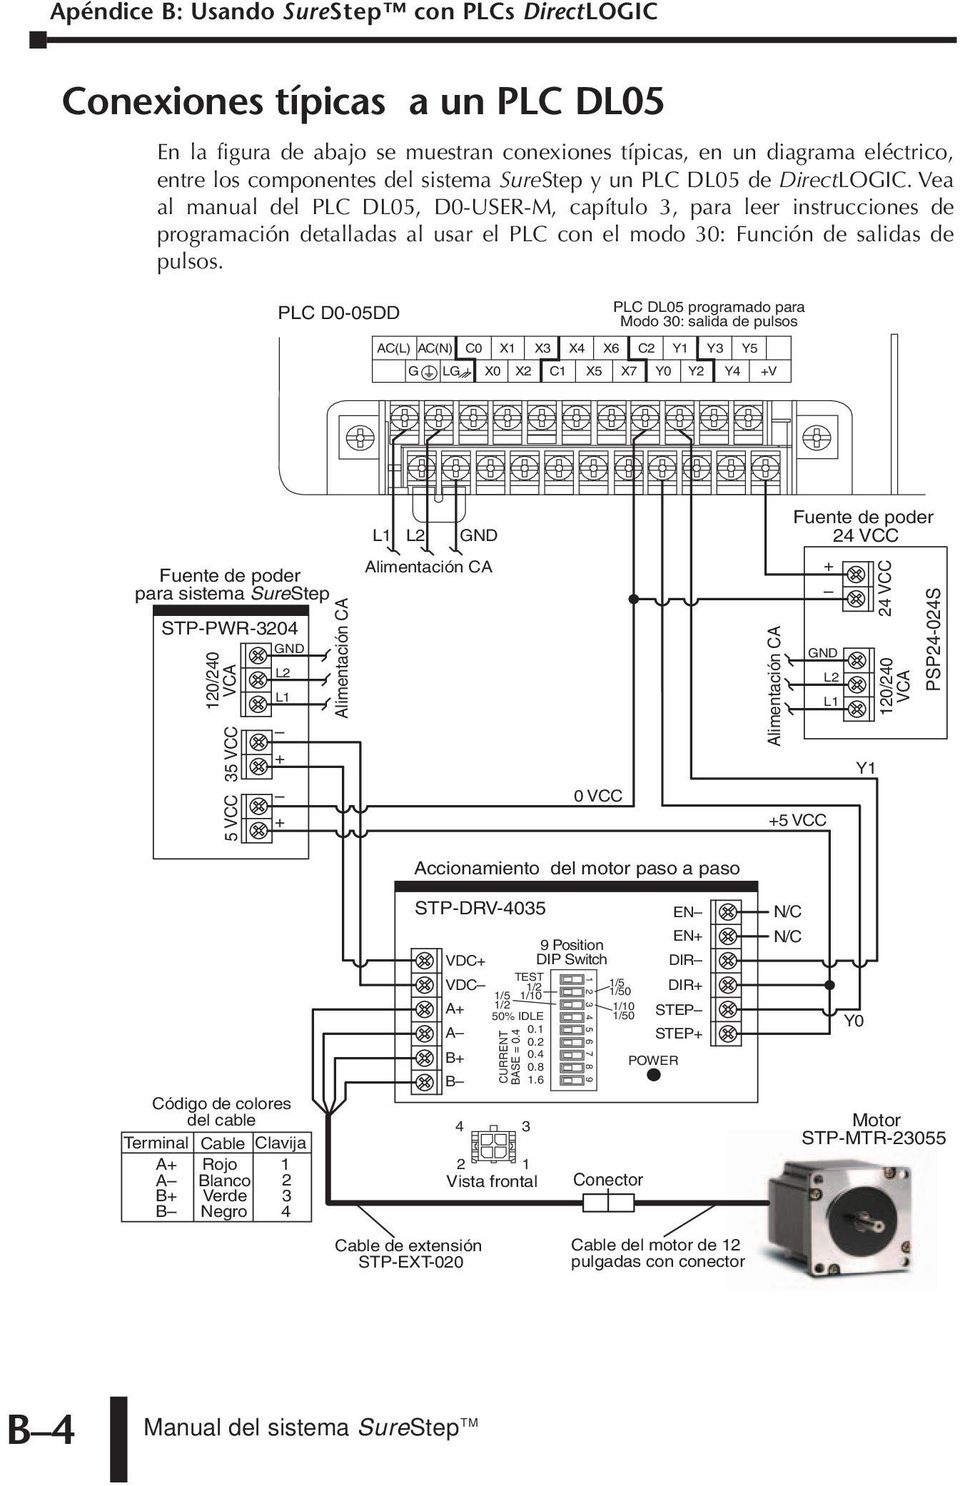 PLC D0-05DD PLC DL05 programado para Modo 30: salida de pulsos AC(L) AC(N) C0 X1 X3 X4 X6 C2 Y3 Y5 G LG X0 X2 C1 X5 X7 Y2 Y4 V Fuente de poder para sistema SureStep STP-PWR-3204 35 VCC 5 VCC 0 VCC 5